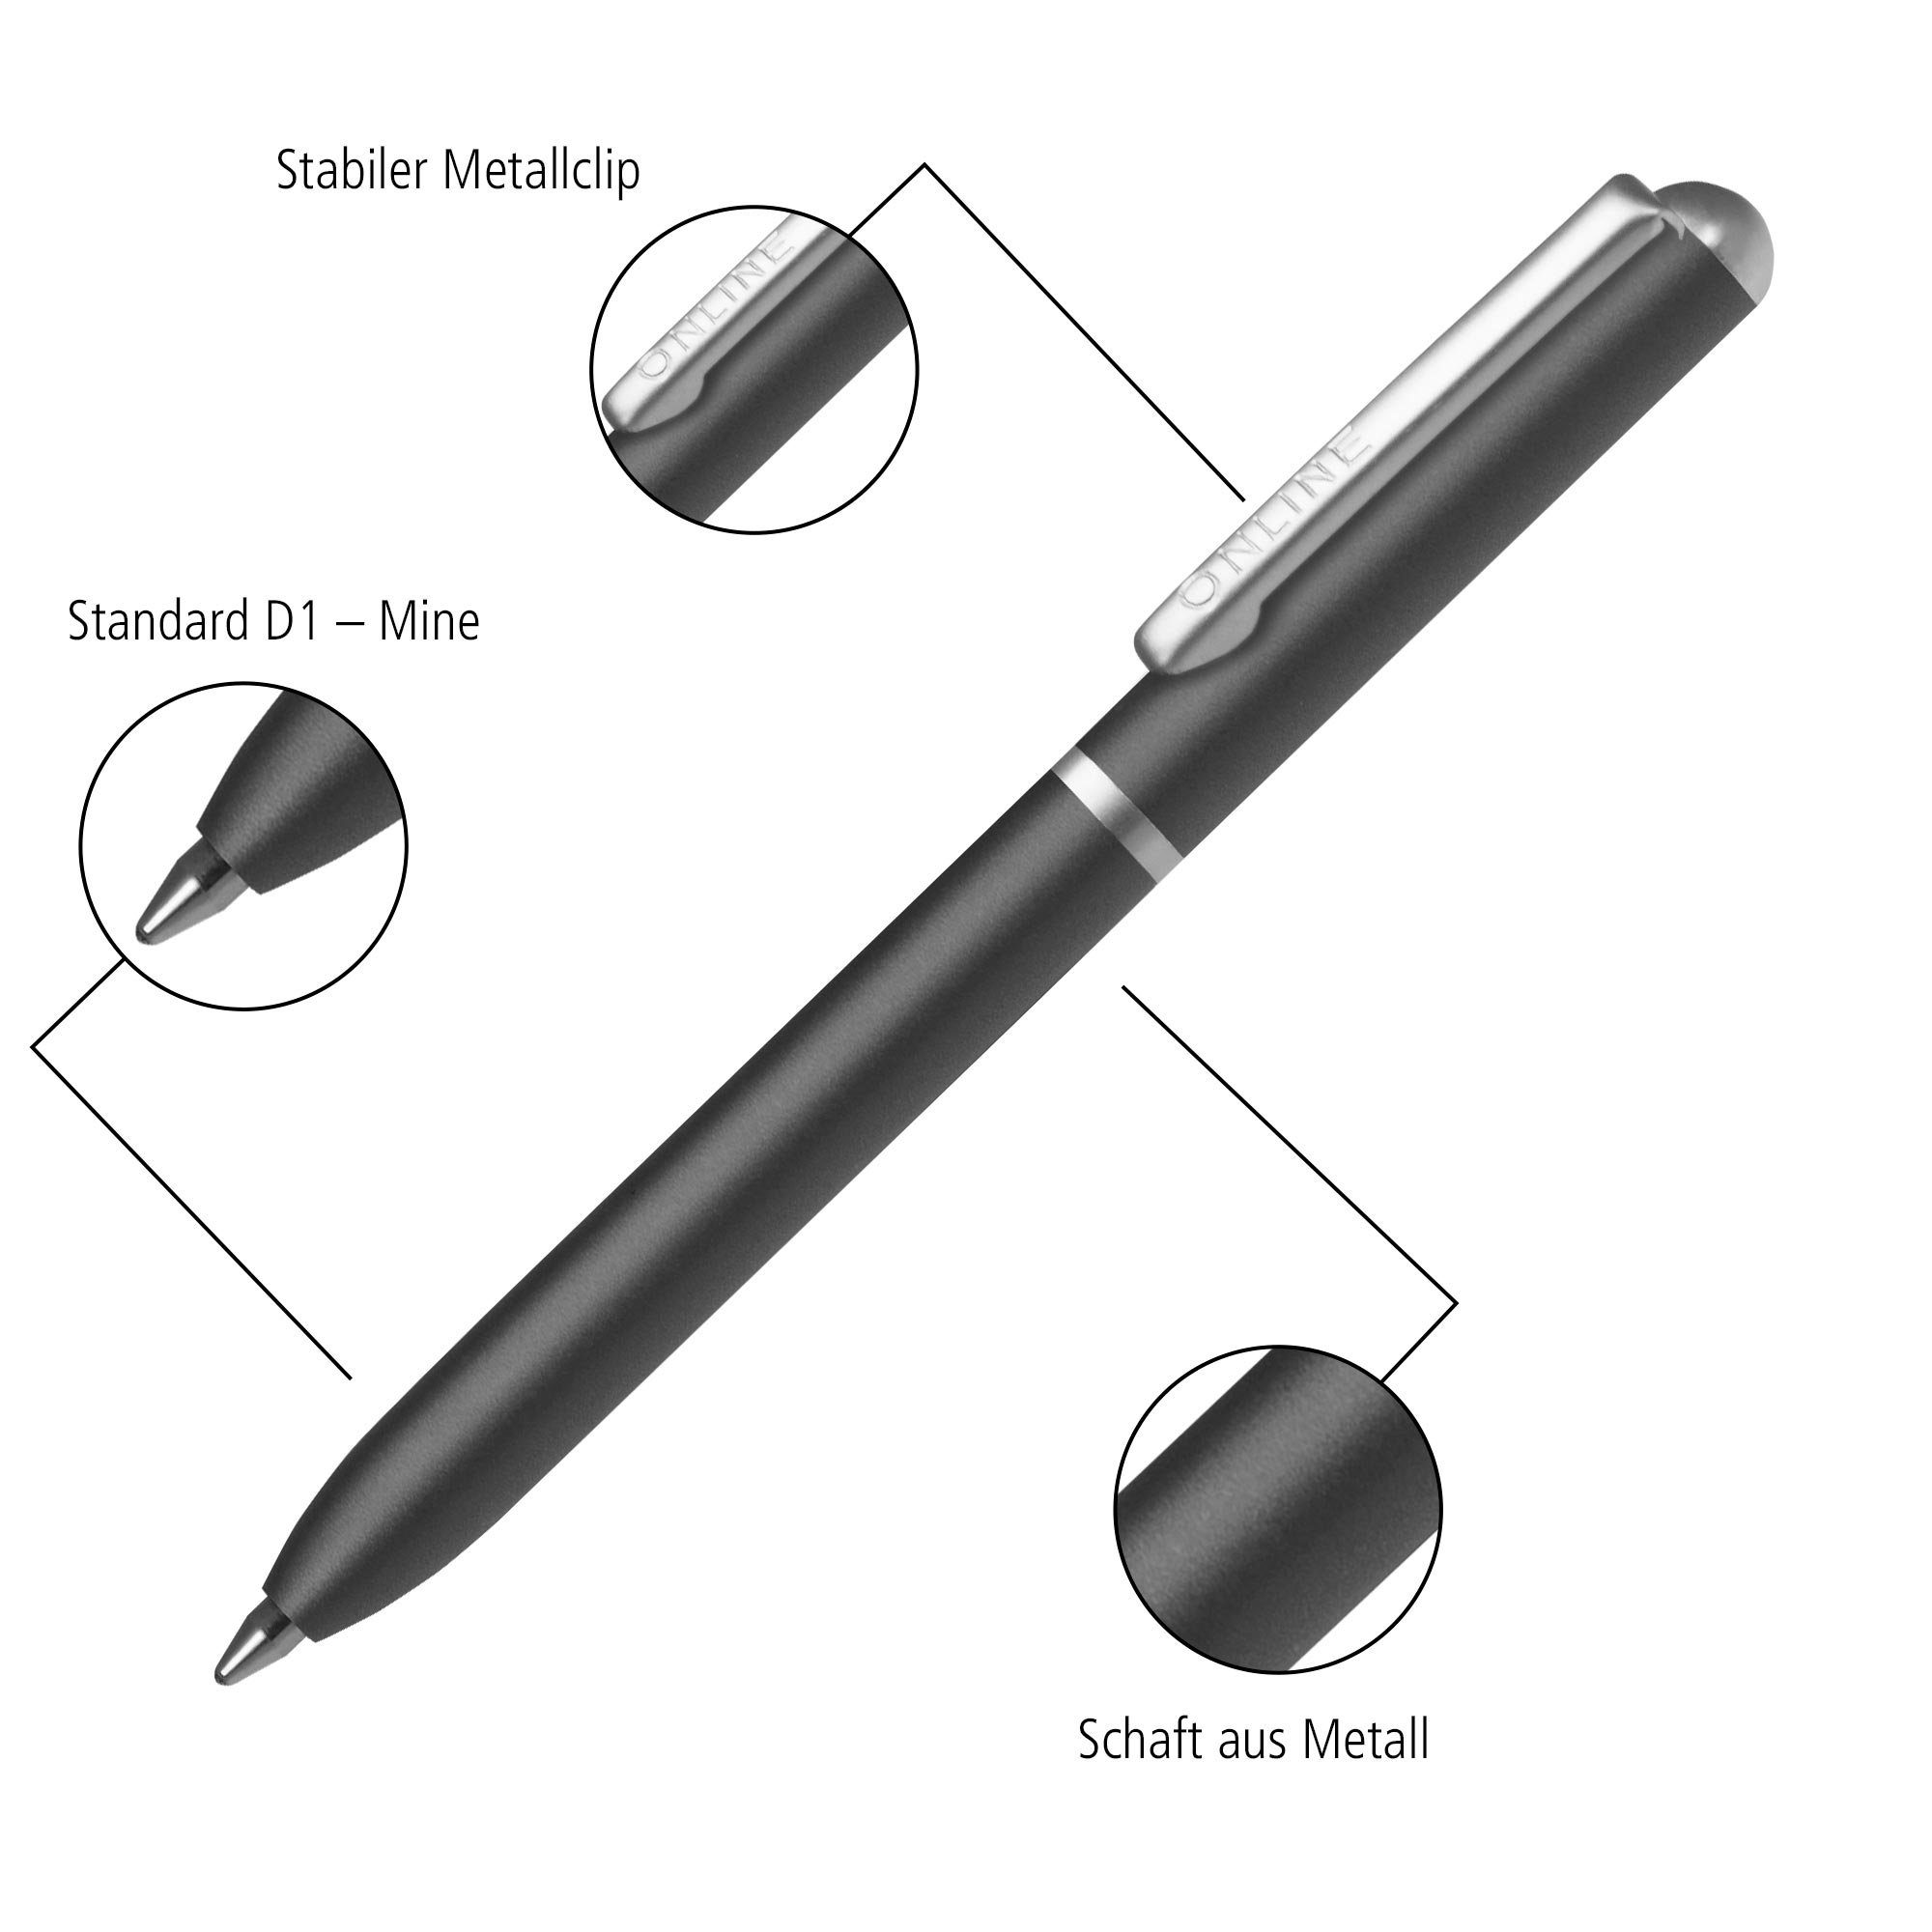 Kugelschreiber Pen Portemonnaie Mini Türkis Online Drehkugelschreiber, Standard schwarzschreibend incl. D1-Qualitätsmine,